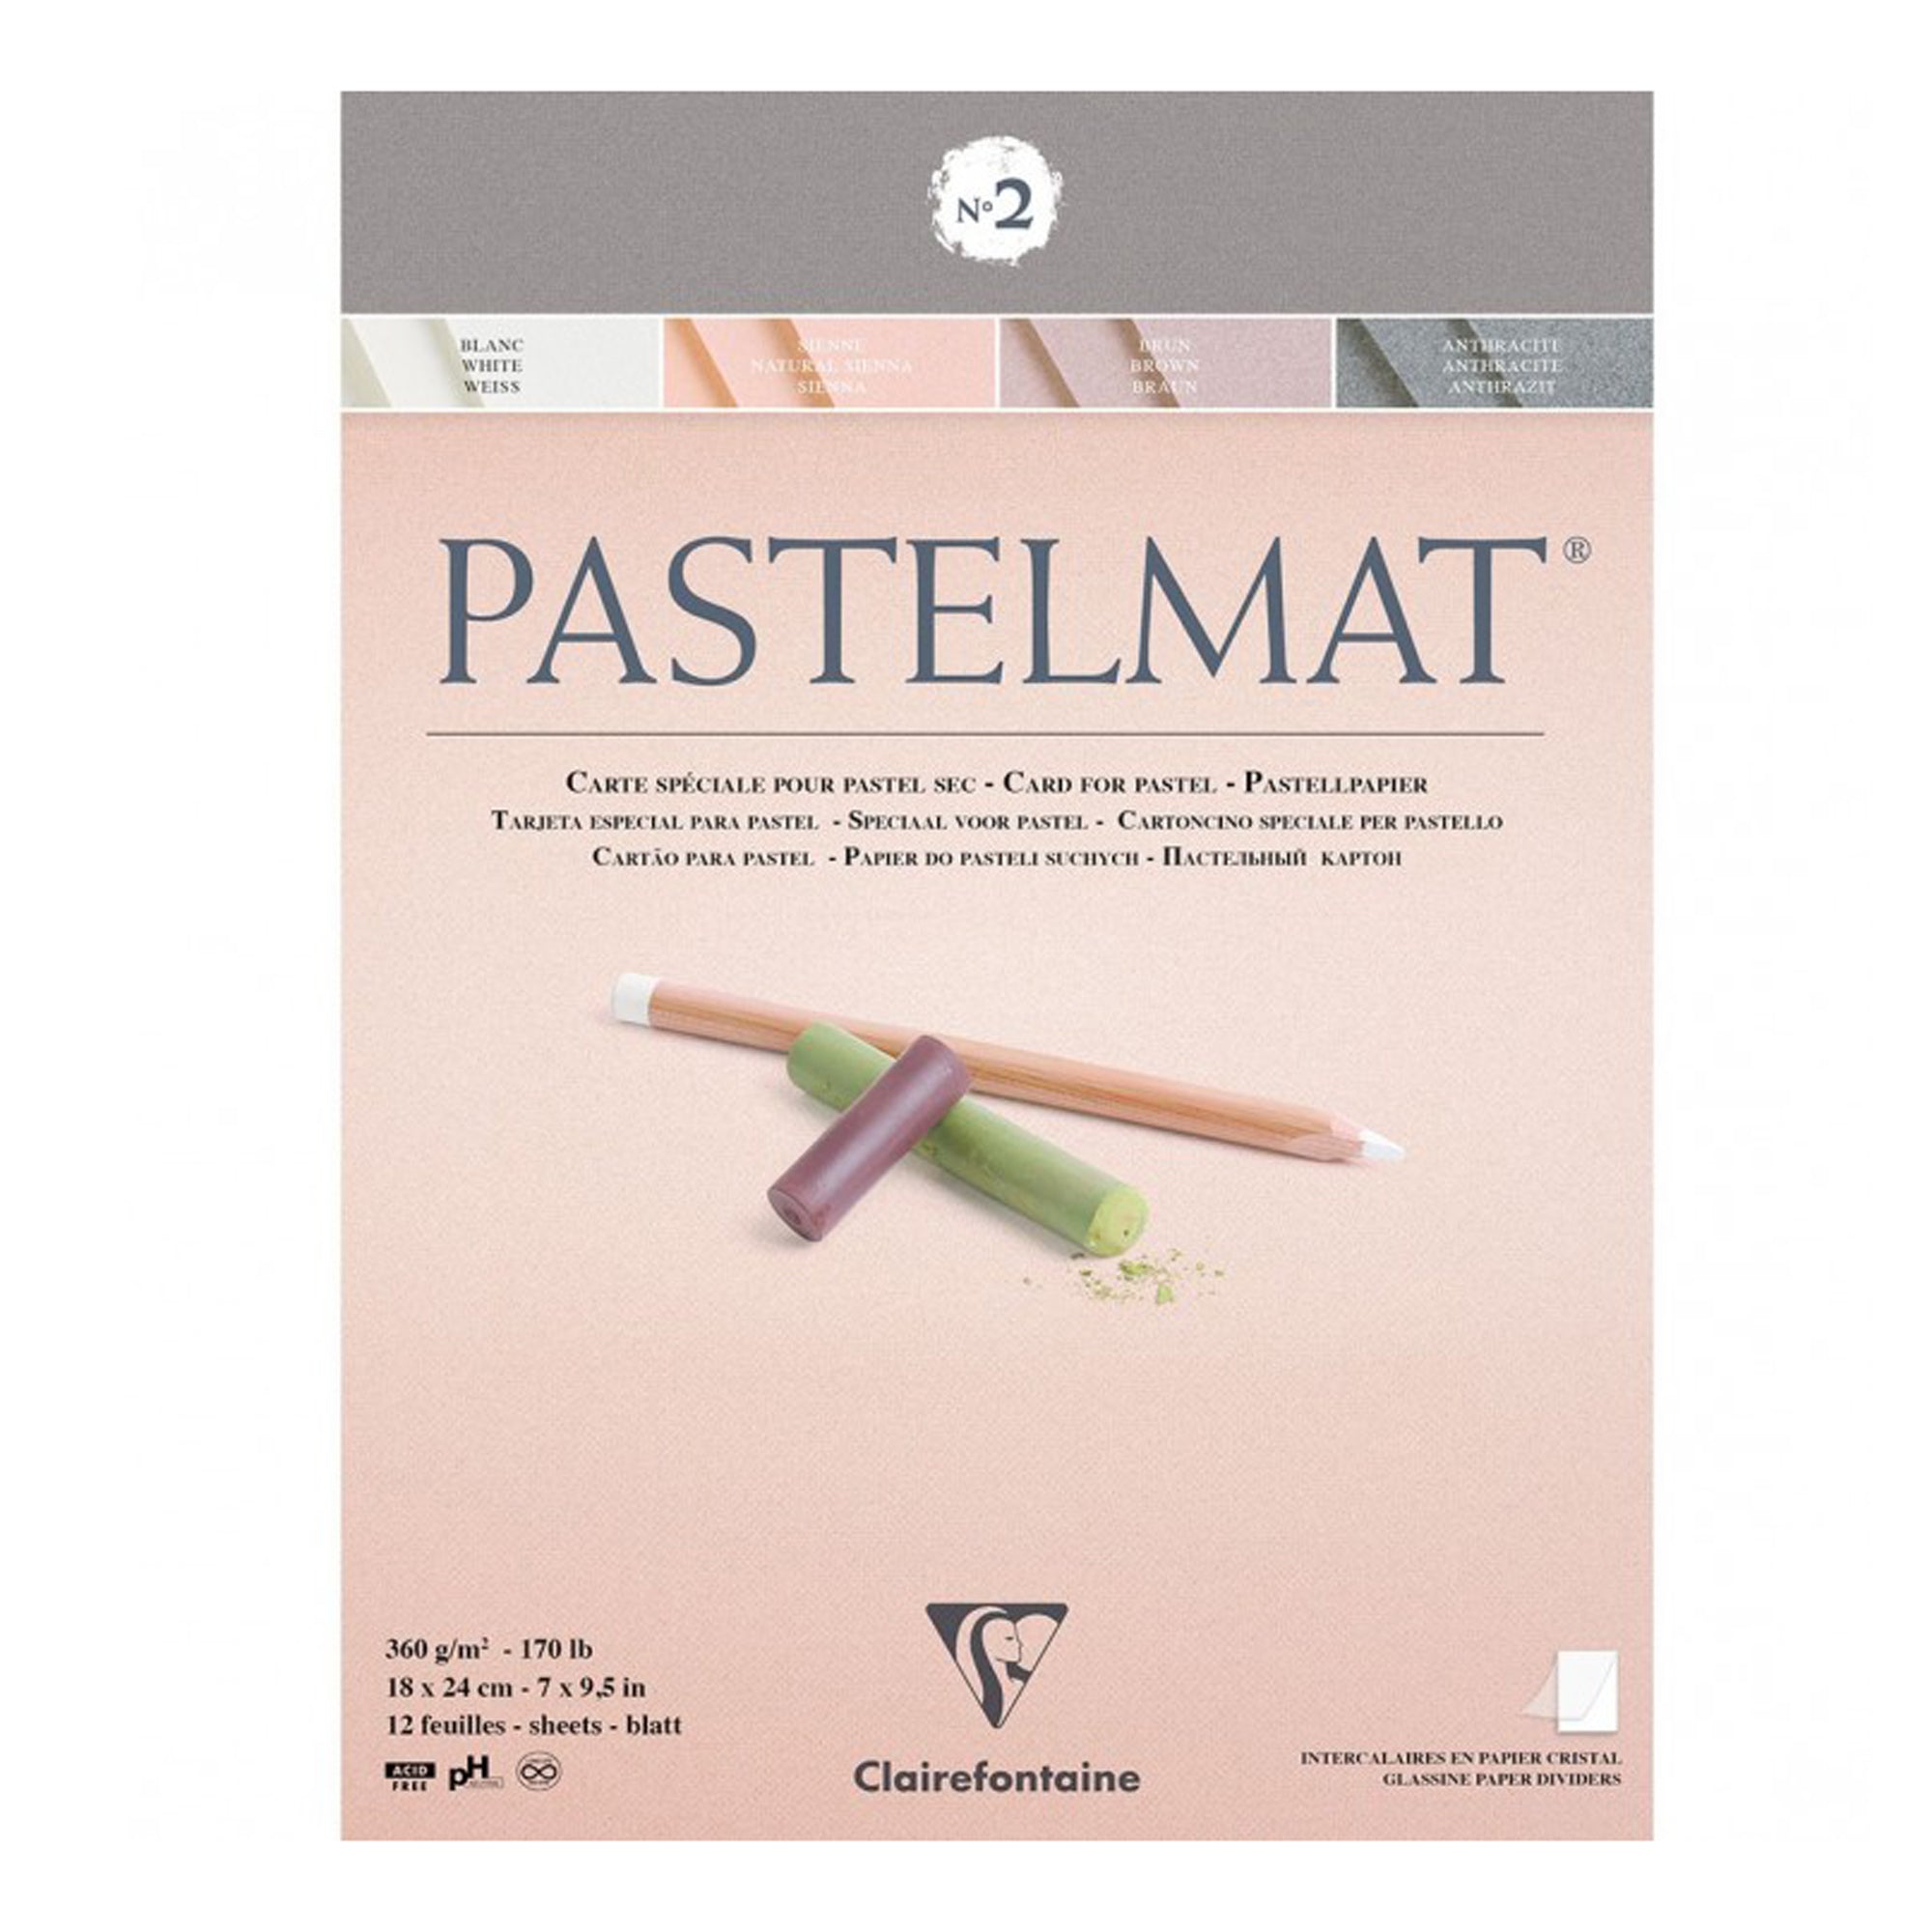 Pastel Paper Comparison  Pastel Card Vs Pastelmat 